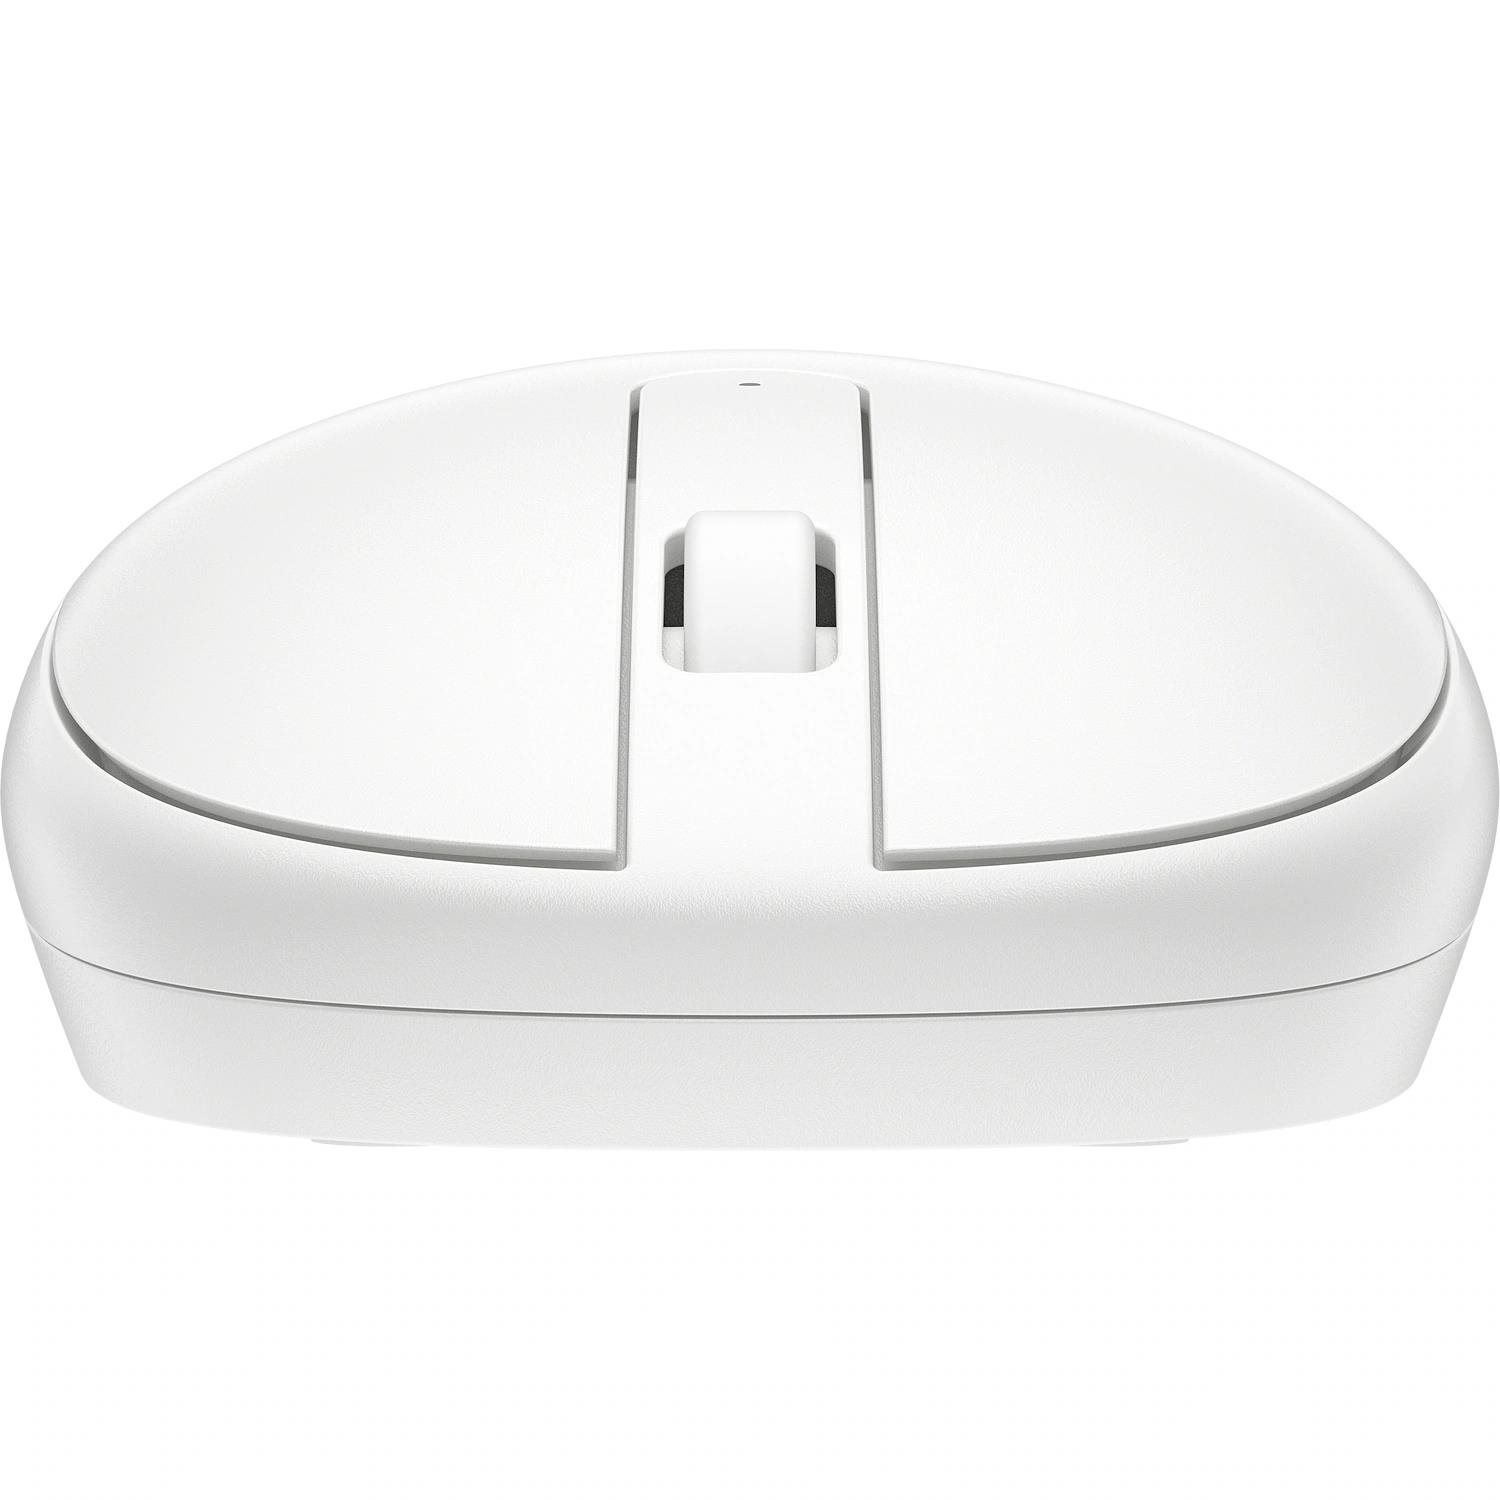 BAZAR - HP 240 Bluetooth Mouse White EURO - bezdrátová bluetooth myš - Poškozený obal (Komplet)1 